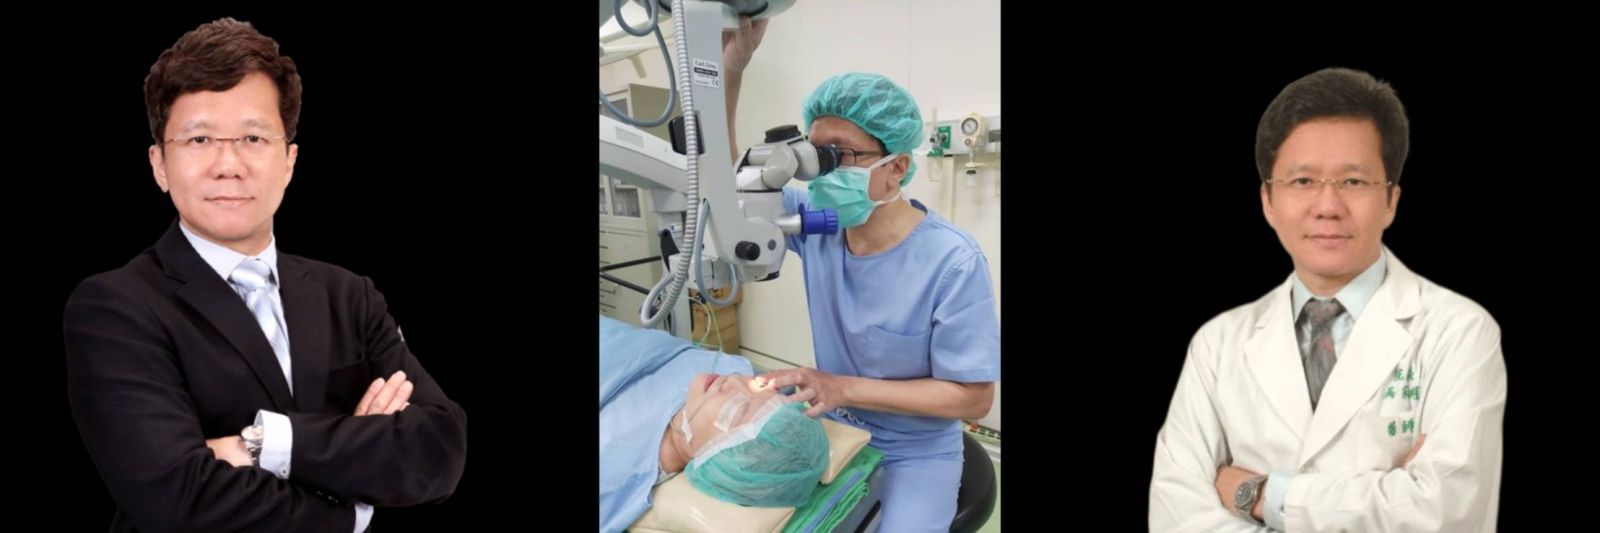 吳家明眼科 高雄眼科推薦 三民眼科推薦 白內障手術權威 角膜塑型權威 近視雷射權威